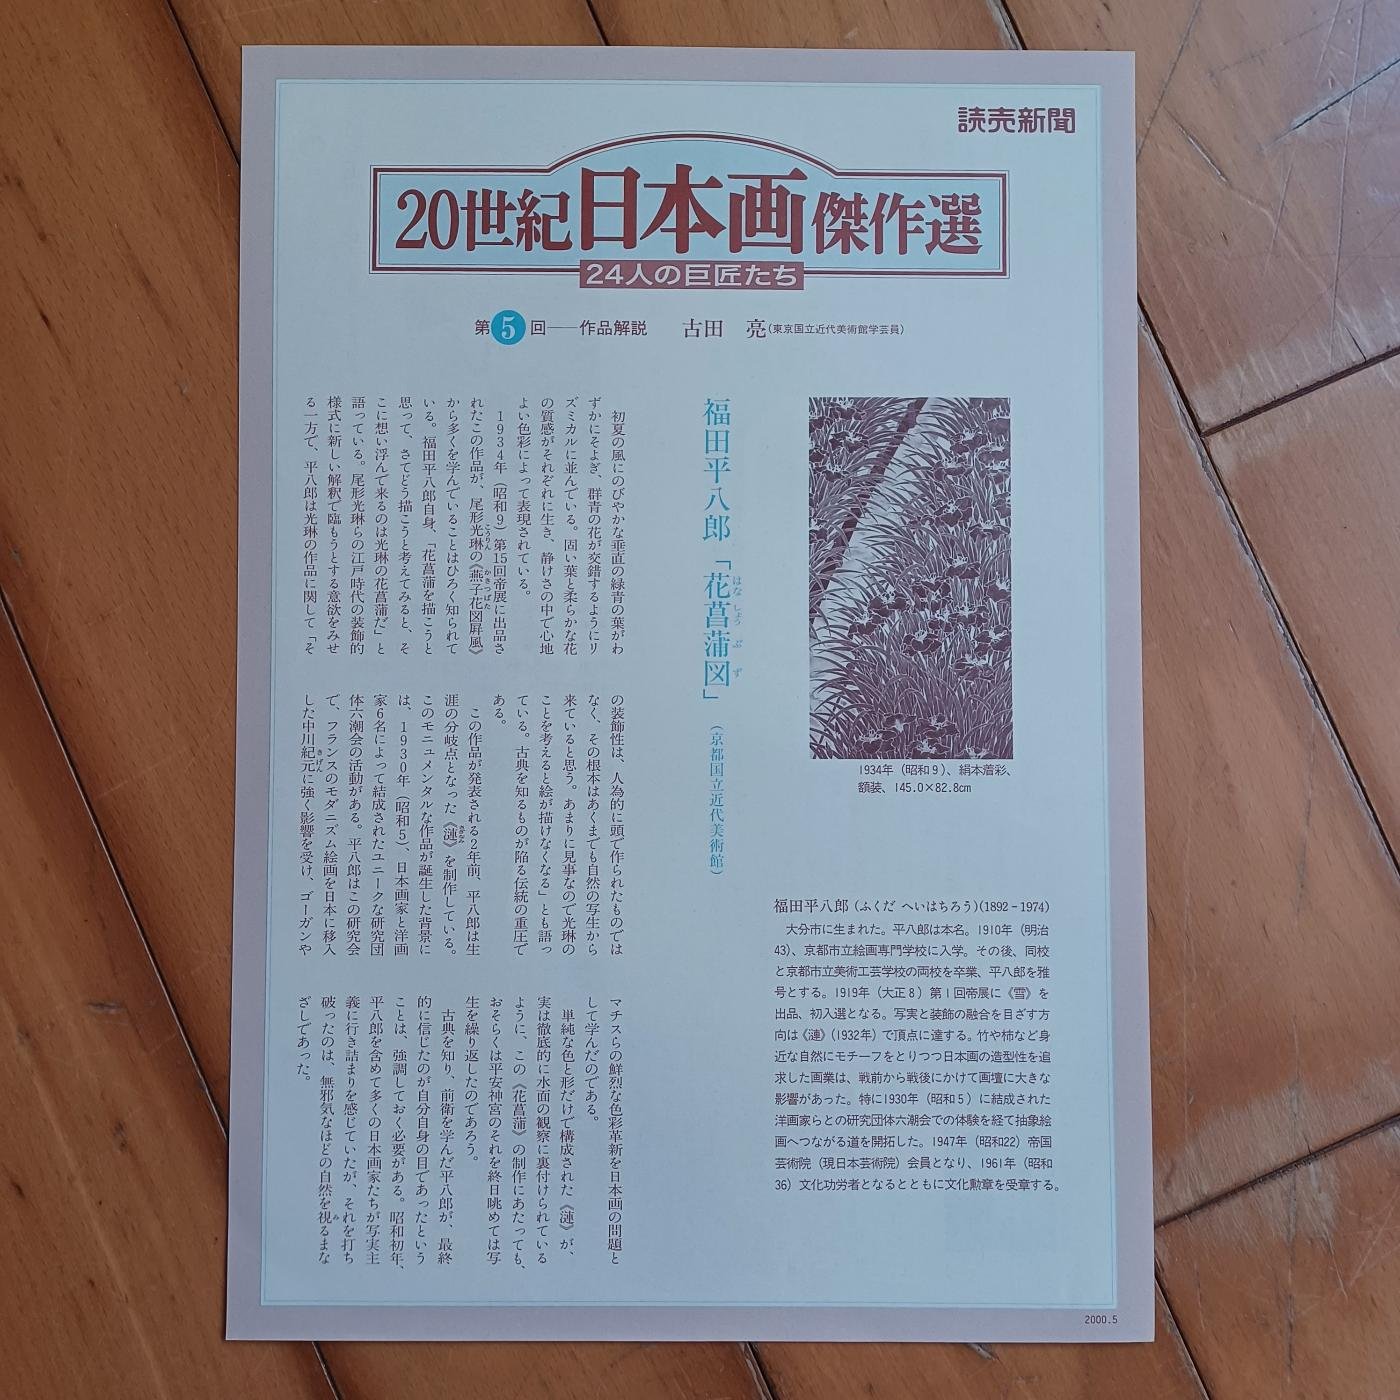 Marsco】讀賣新聞2000年5月（20世紀日本畫傑作選-24位大師）印刷複製畫